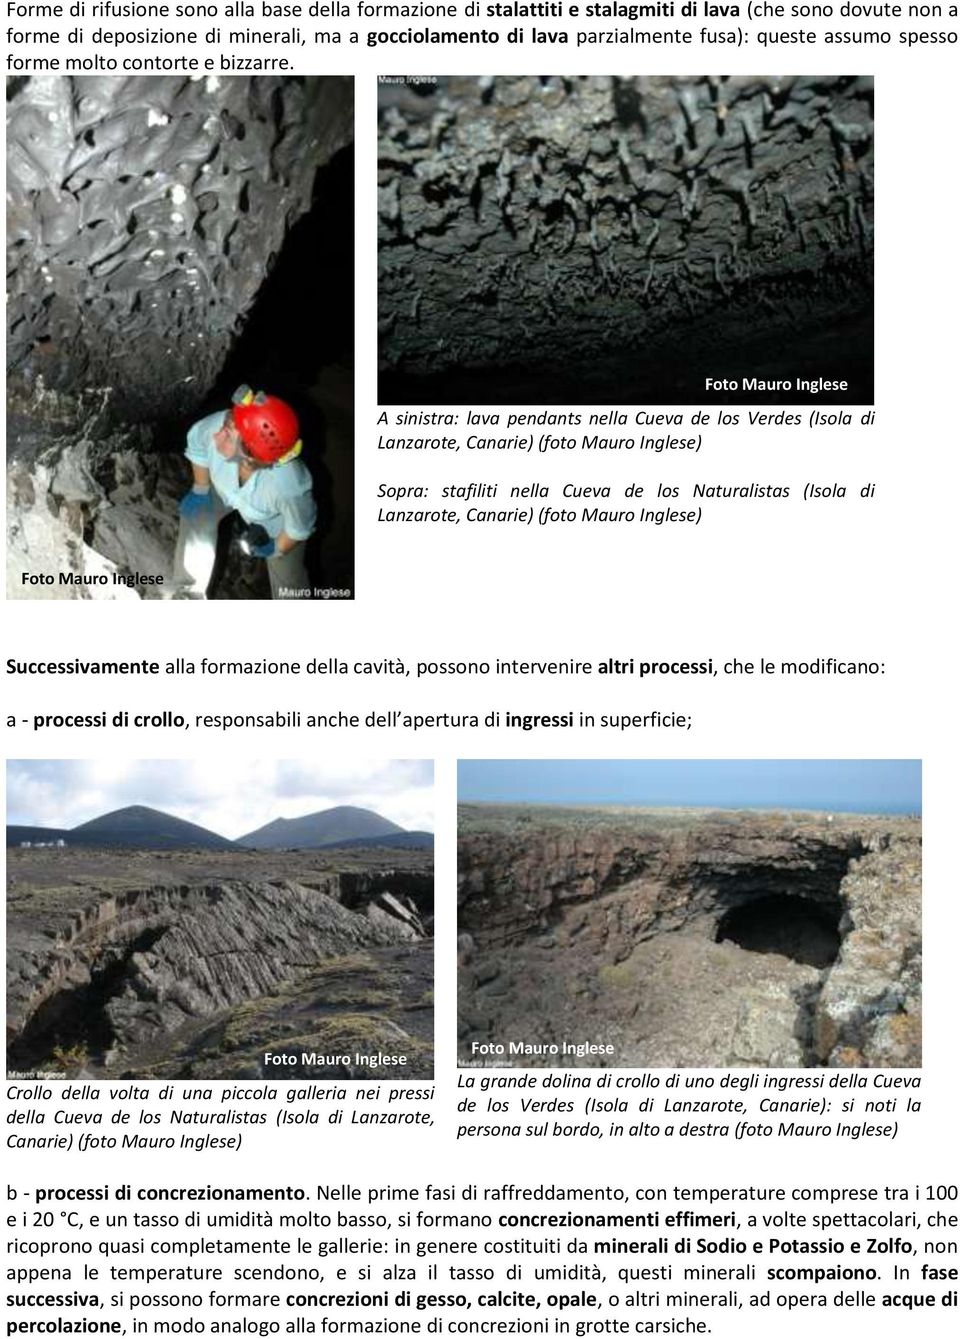 A sinistra: lava pendants nella Cueva de los Verdes (Isola di Lanzarote, Canarie) (foto Mauro Sopra: stafiliti nella Cueva de los Naturalistas (Isola di Lanzarote, Canarie) (foto Mauro